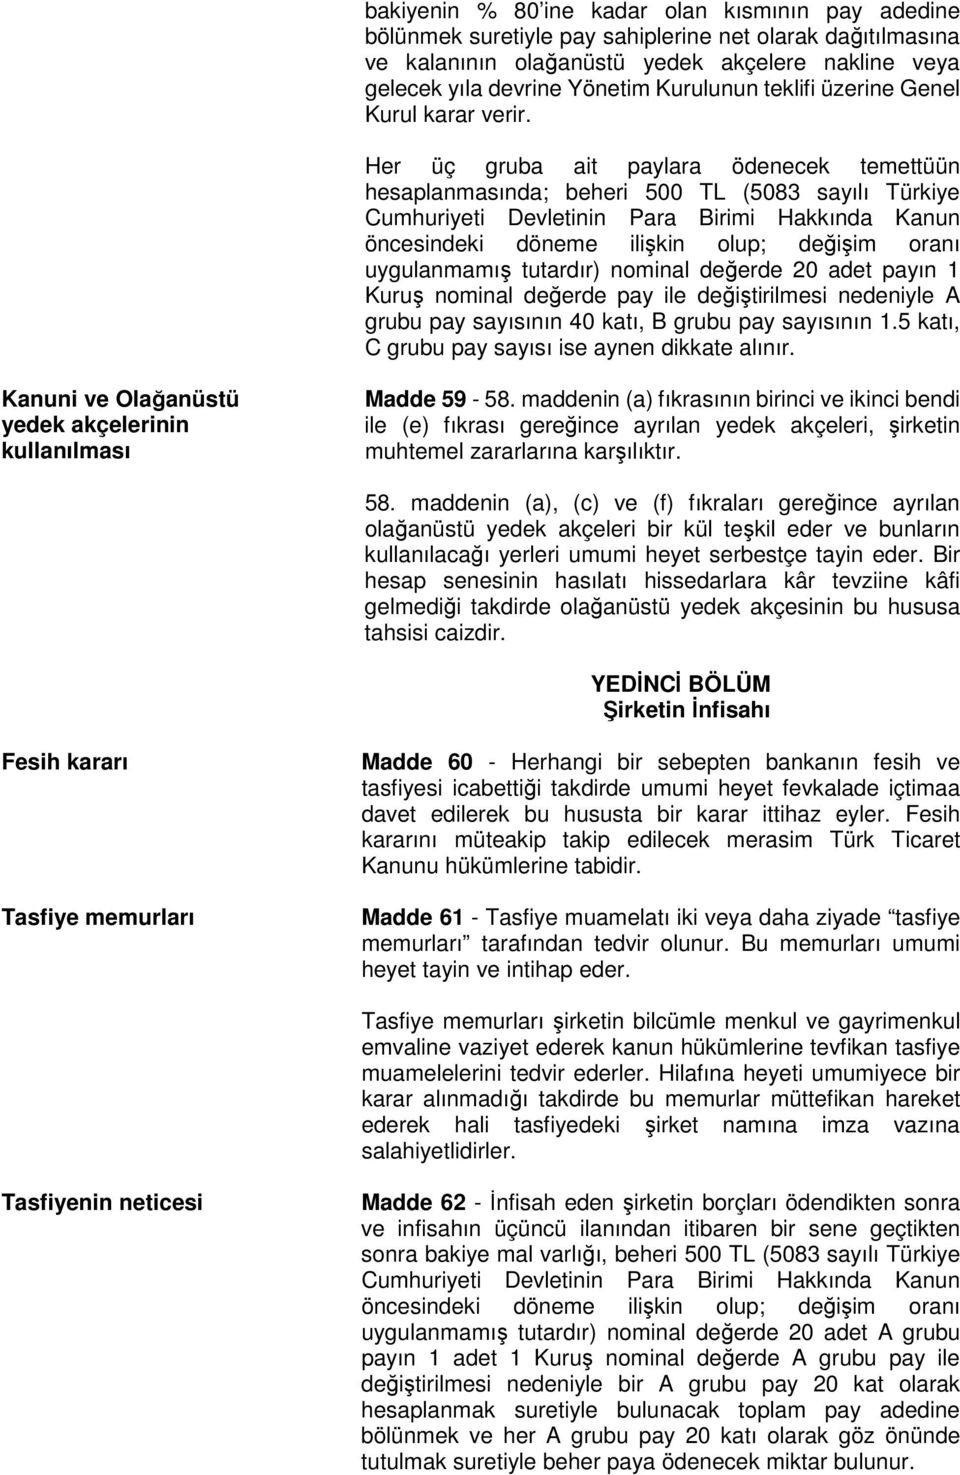 Her üç gruba ait paylara ödenecek temettüün hesaplanmasında; beheri 500 TL (5083 sayılı Türkiye Cumhuriyeti Devletinin Para Birimi Hakkında Kanun öncesindeki döneme ilişkin olup; değişim oranı